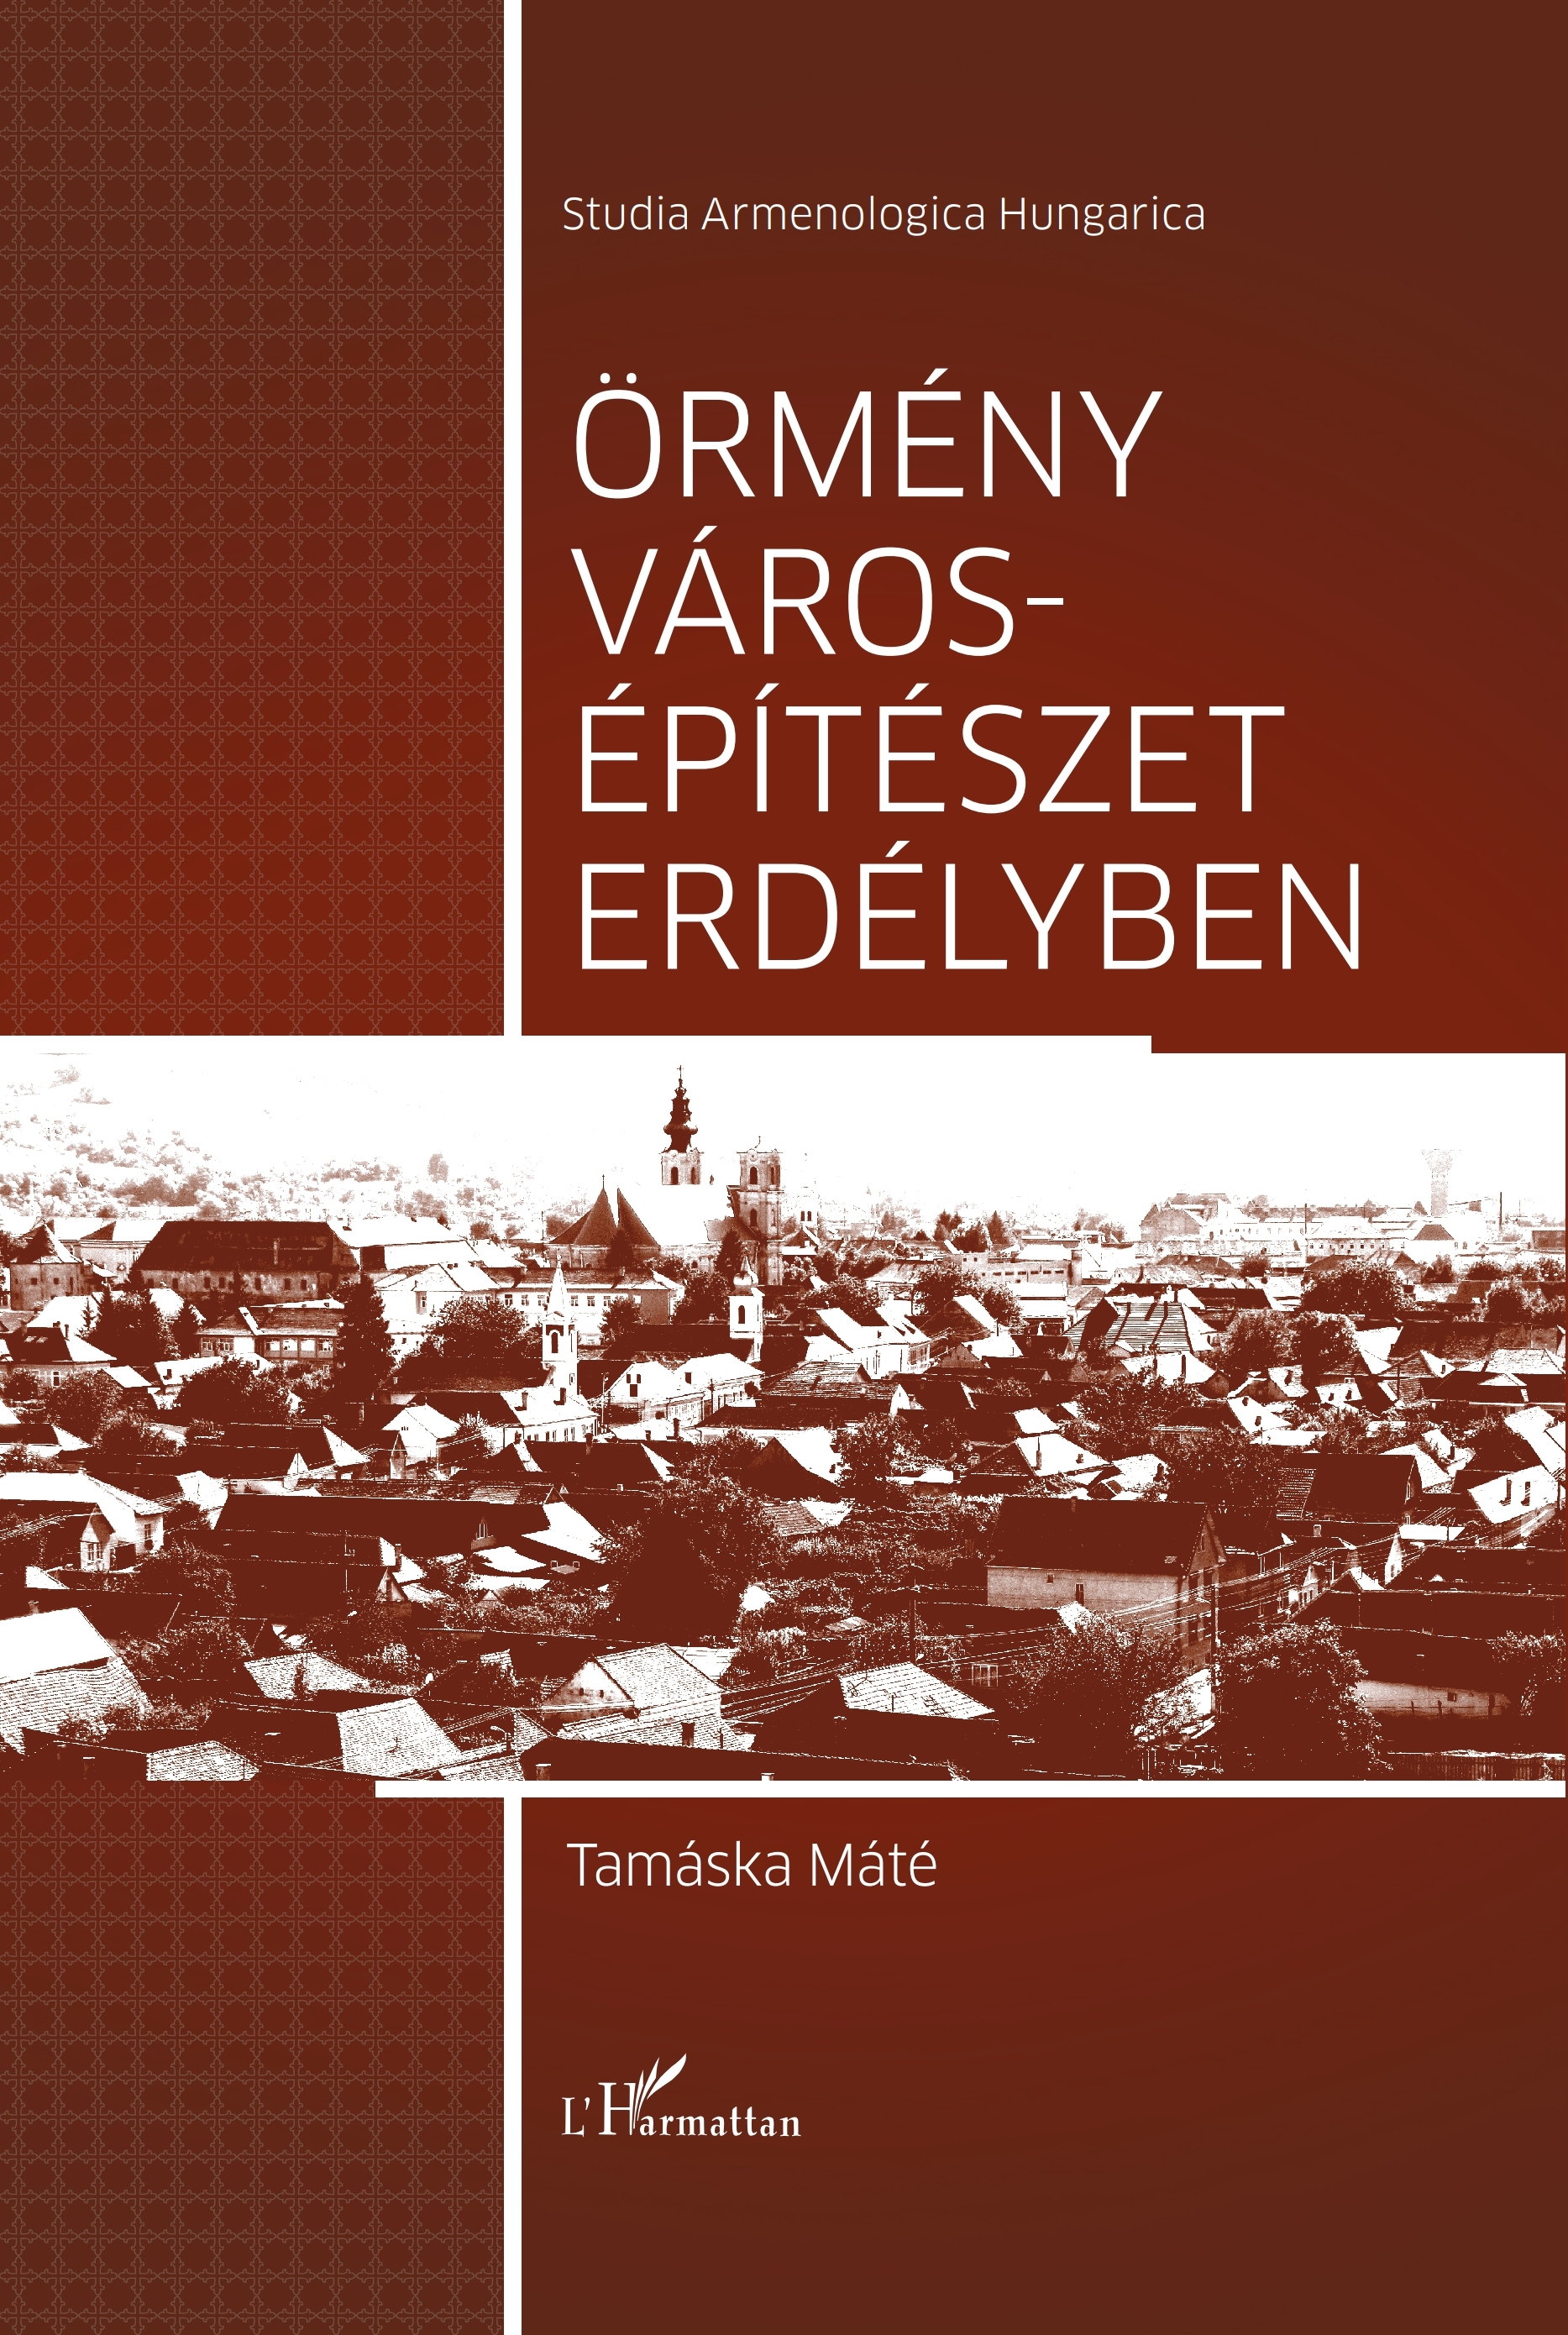 Tamáska Máté: Örmény Városépítészet Erdélyben. L’Harmattan Kiadó, Budapest, 2020.